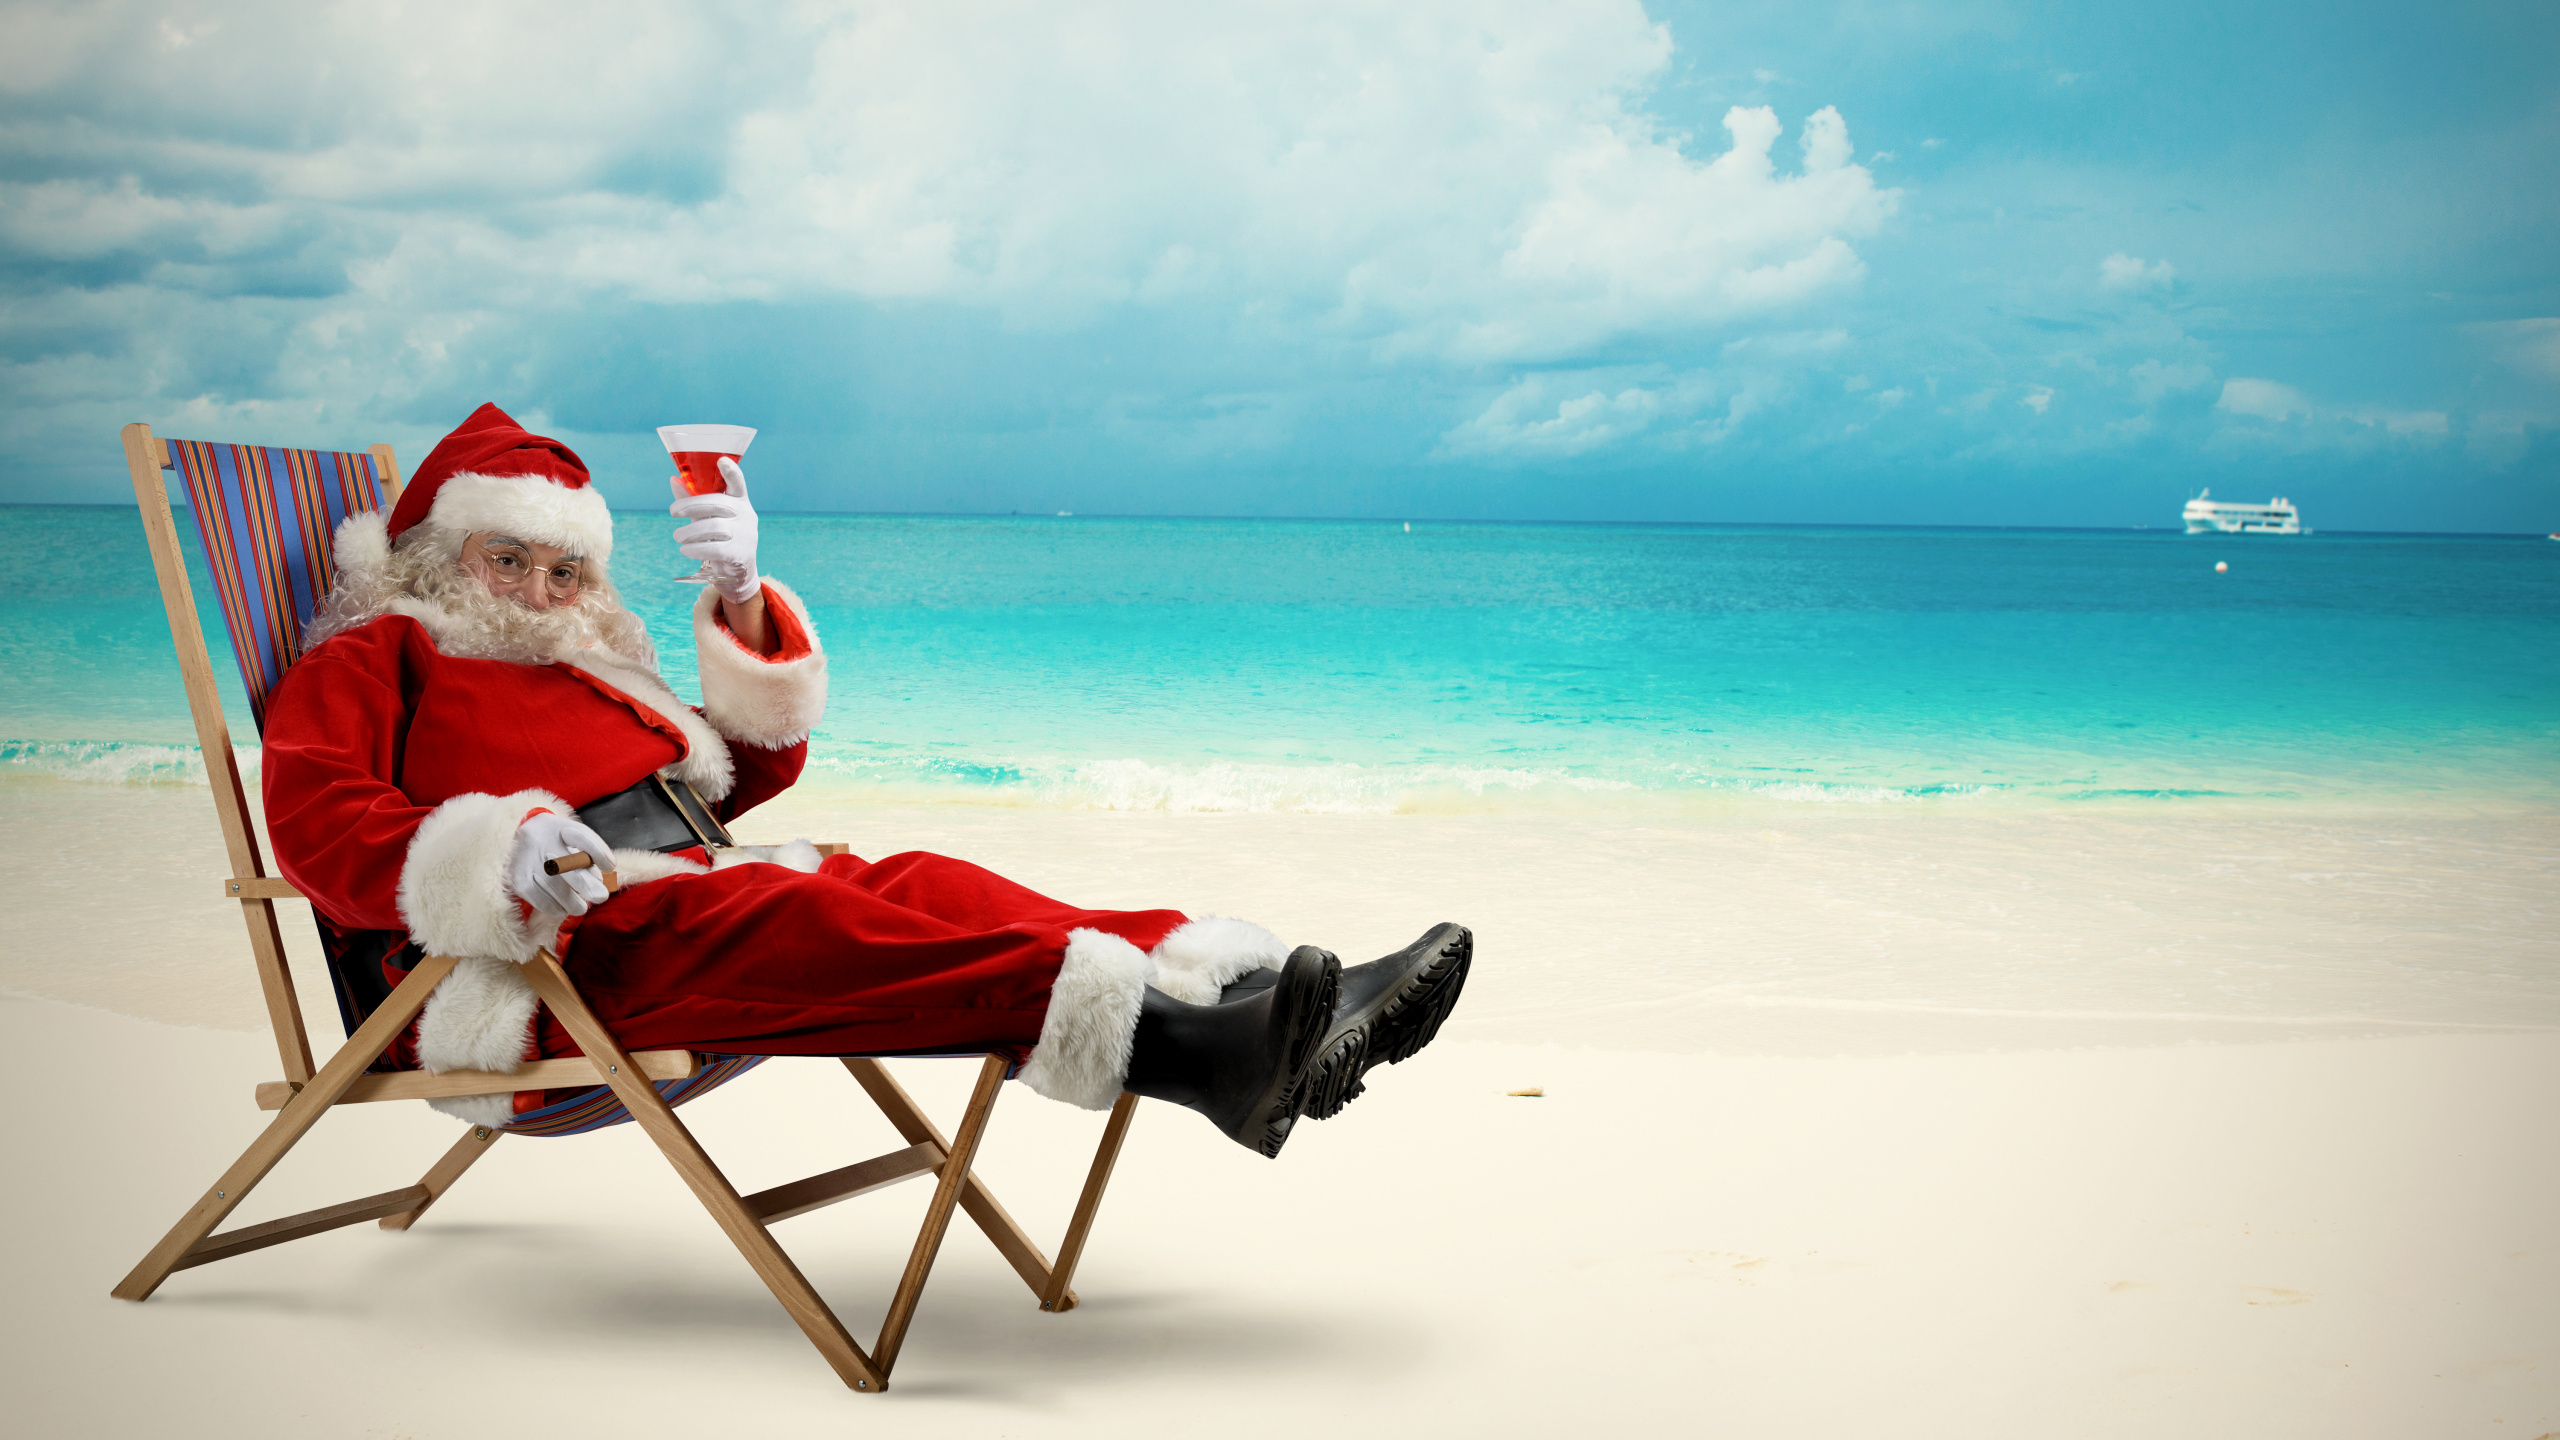 Weihnachtsmann, Weihnachten, Strand, Meer, Urlaub. Wallpaper in 2560x1440 Resolution